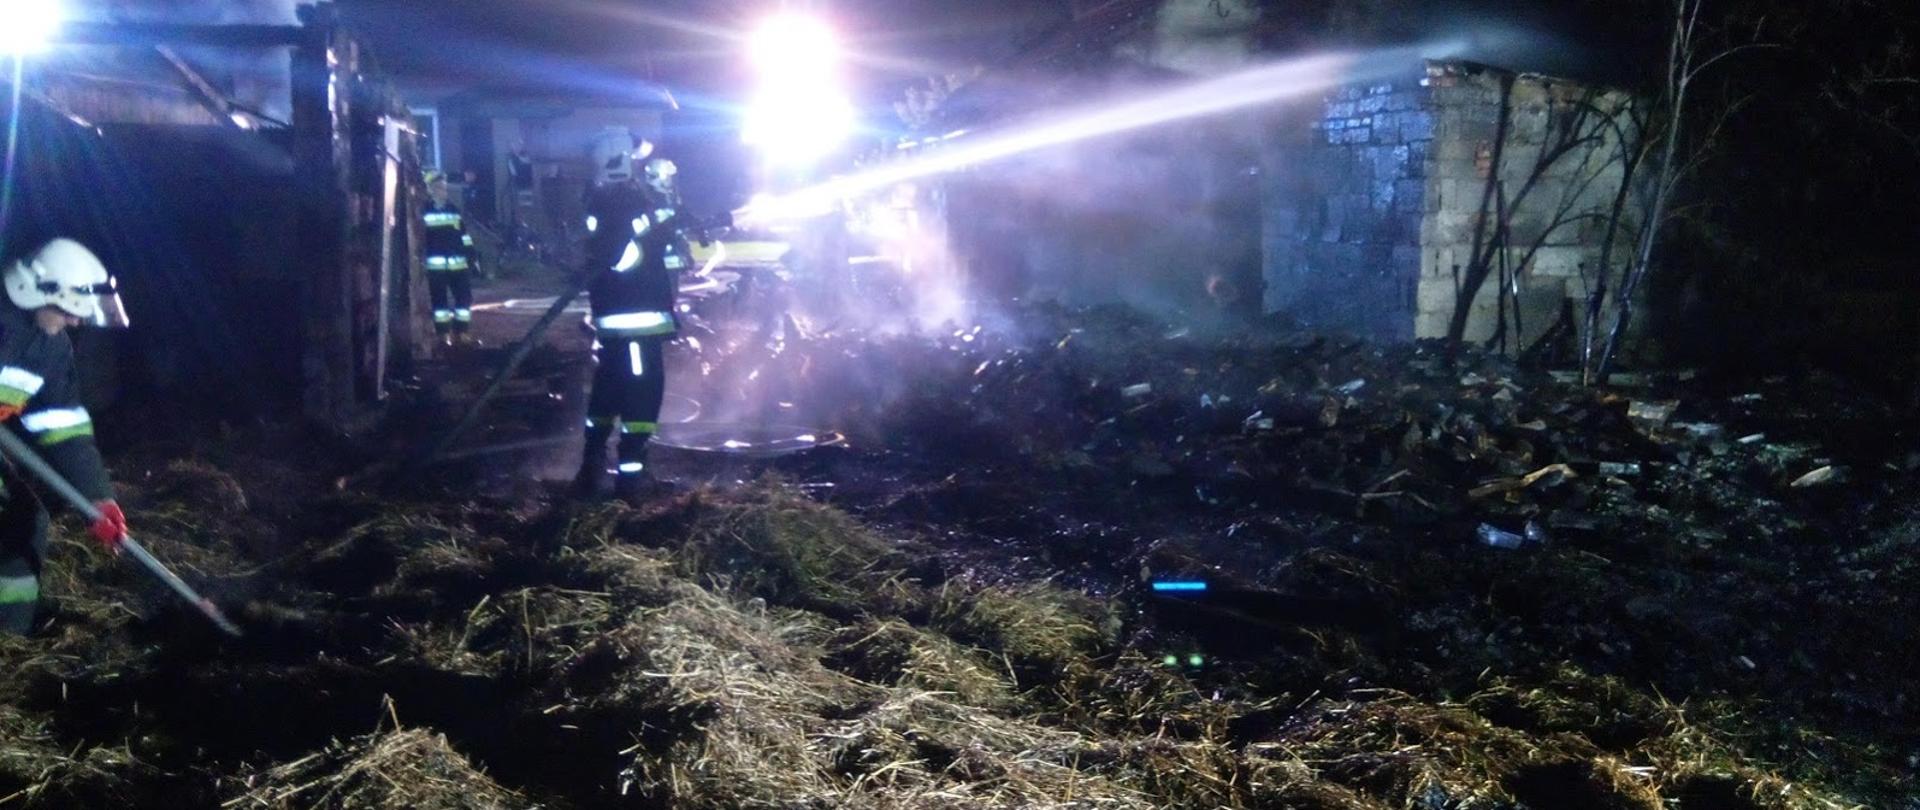 . Zdjęcie przedstawia pogorzelisko po pożarze budynku gospodarczego ze spalonymi elementami konstrukcji. Widoczny unoszący się dym, w tle strażak OSP dogaszający pogorzelisko prądem wody.